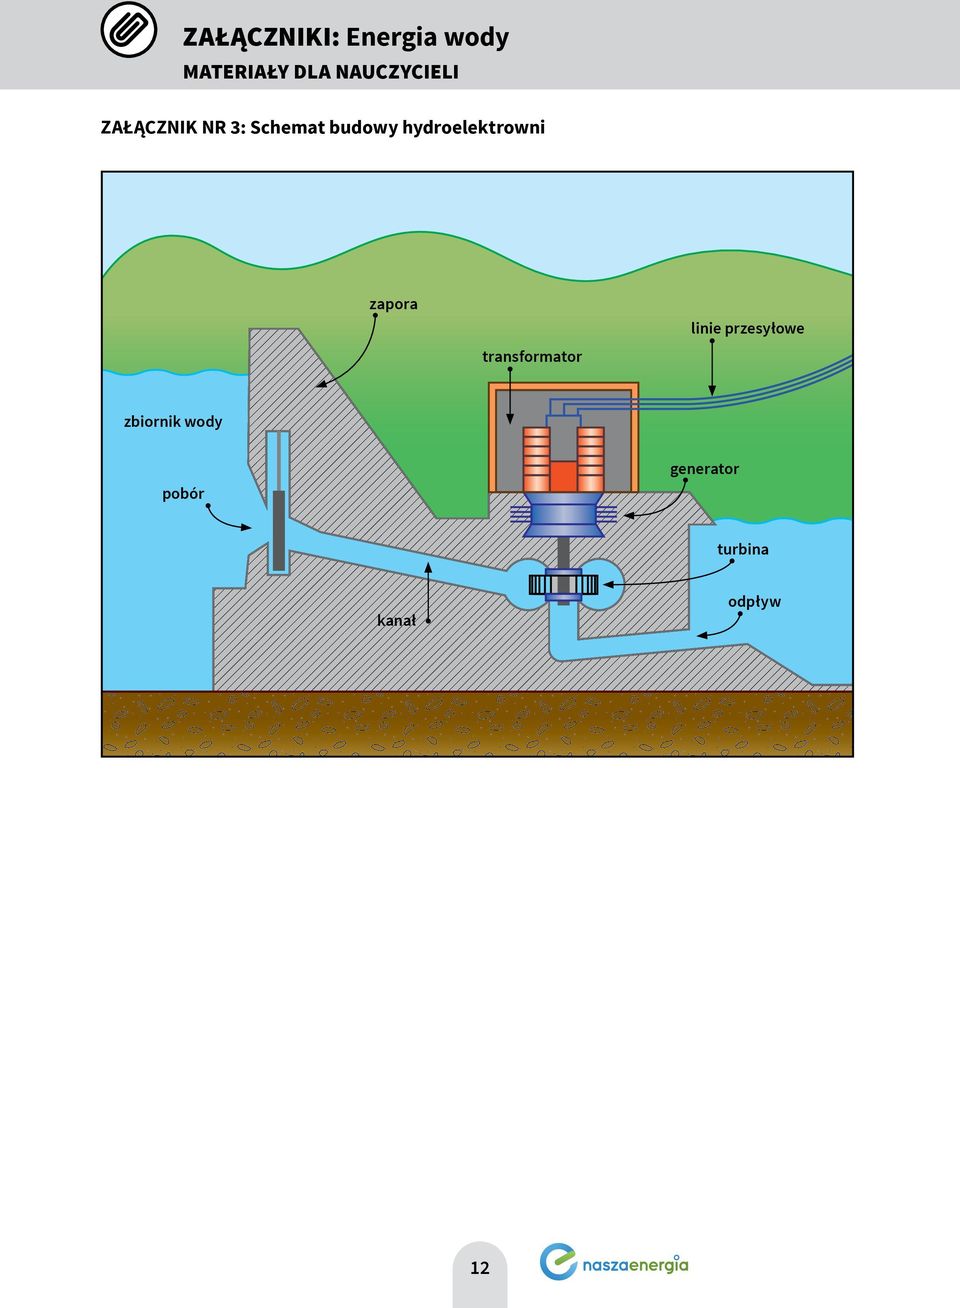 hydroelektrowni zapora transformator linie